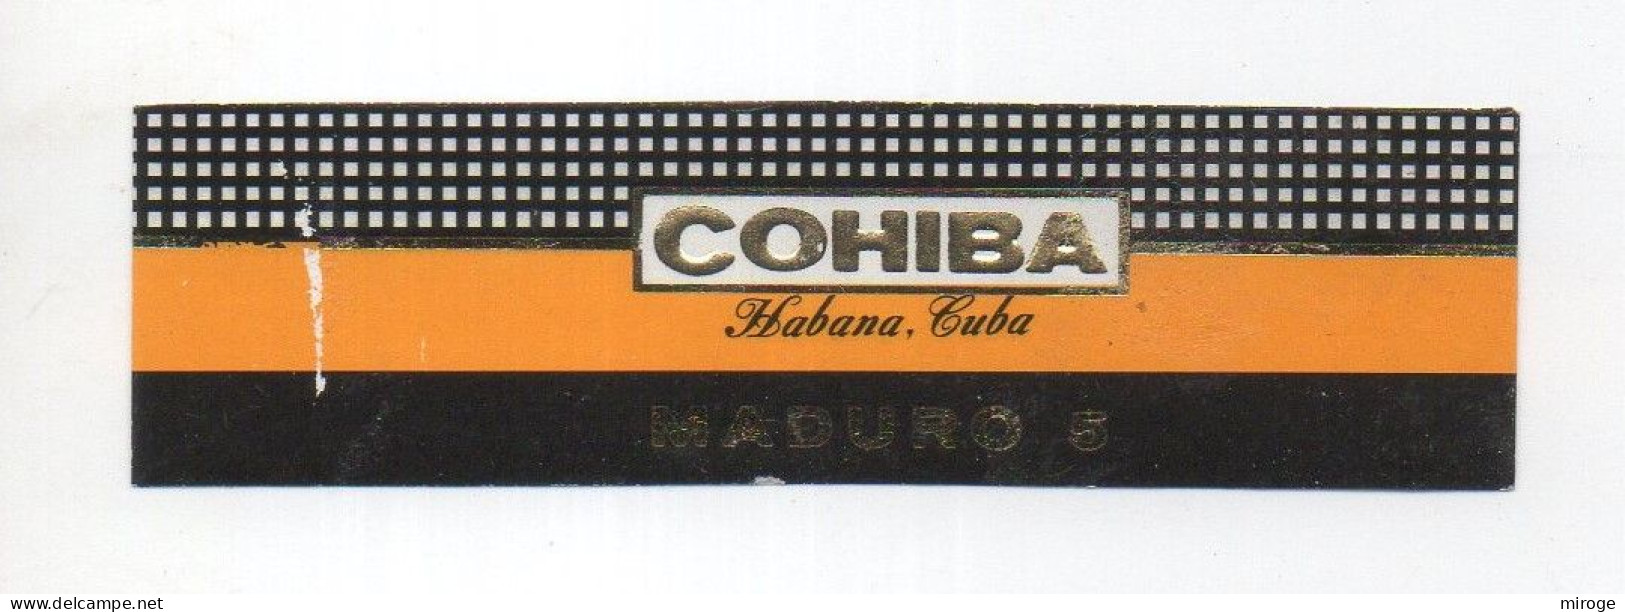 Cohiba, Bague De Cigare , Label : CUBA , Habana Cuba, Maduro 5 - Bauchbinden (Zigarrenringe)